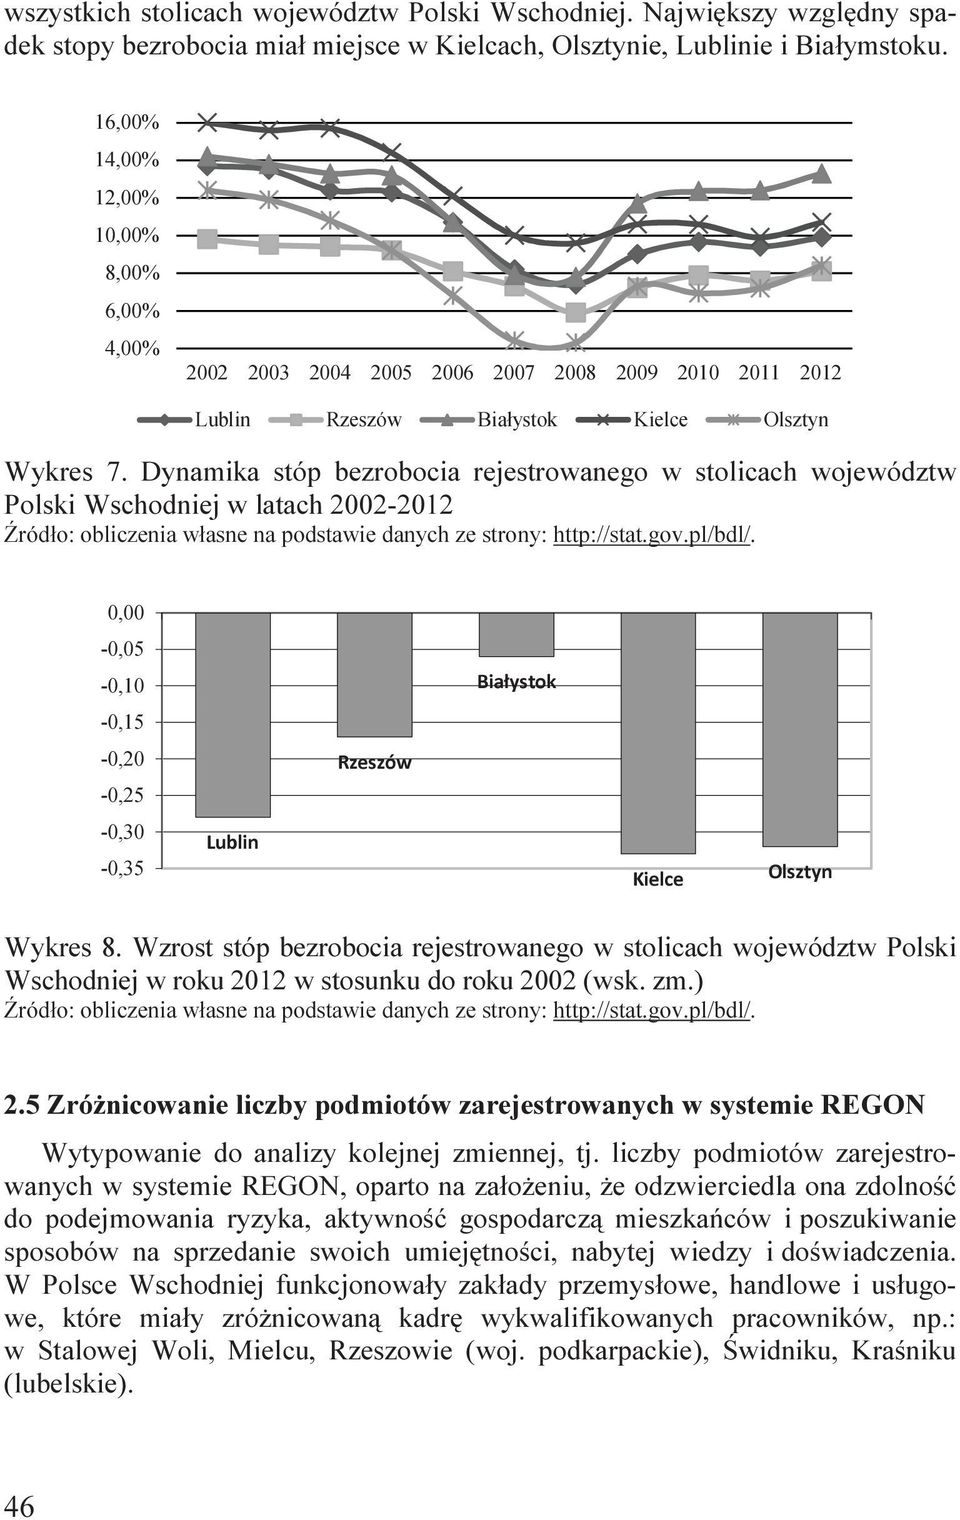 Dynamka stóp bezroboca rejestrowanego w stolcach województw Polsk Wschodnej w latach 2002-2012 Źródło: oblczena własne na podstawe danych ze strony: http://stat.gov.pl/bdl/.